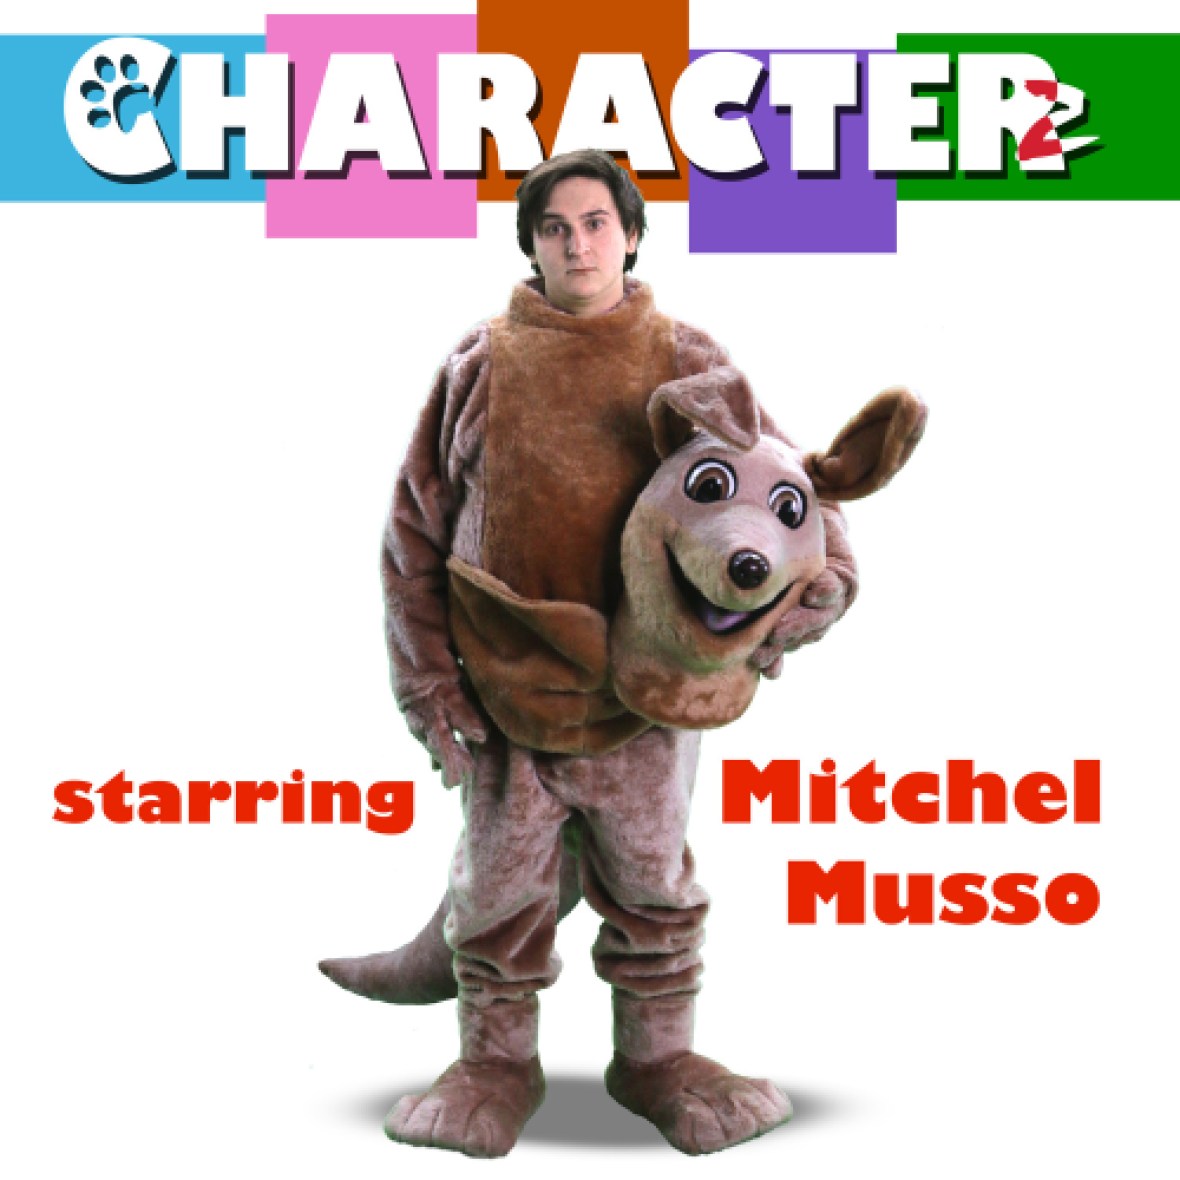 mitchel musso characterz movie